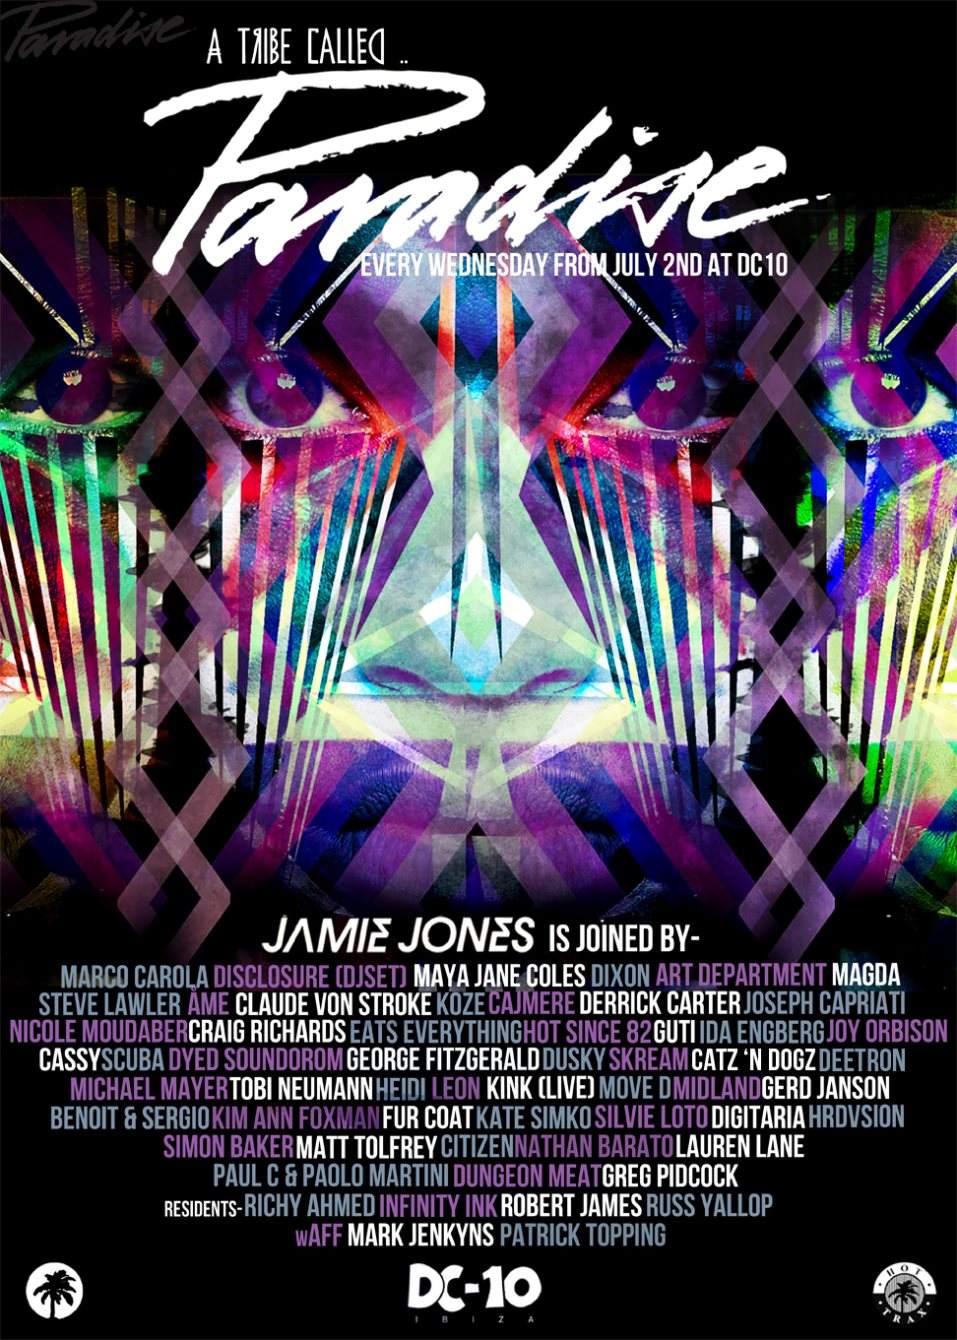 Jamie Jones presents Paradise - フライヤー表